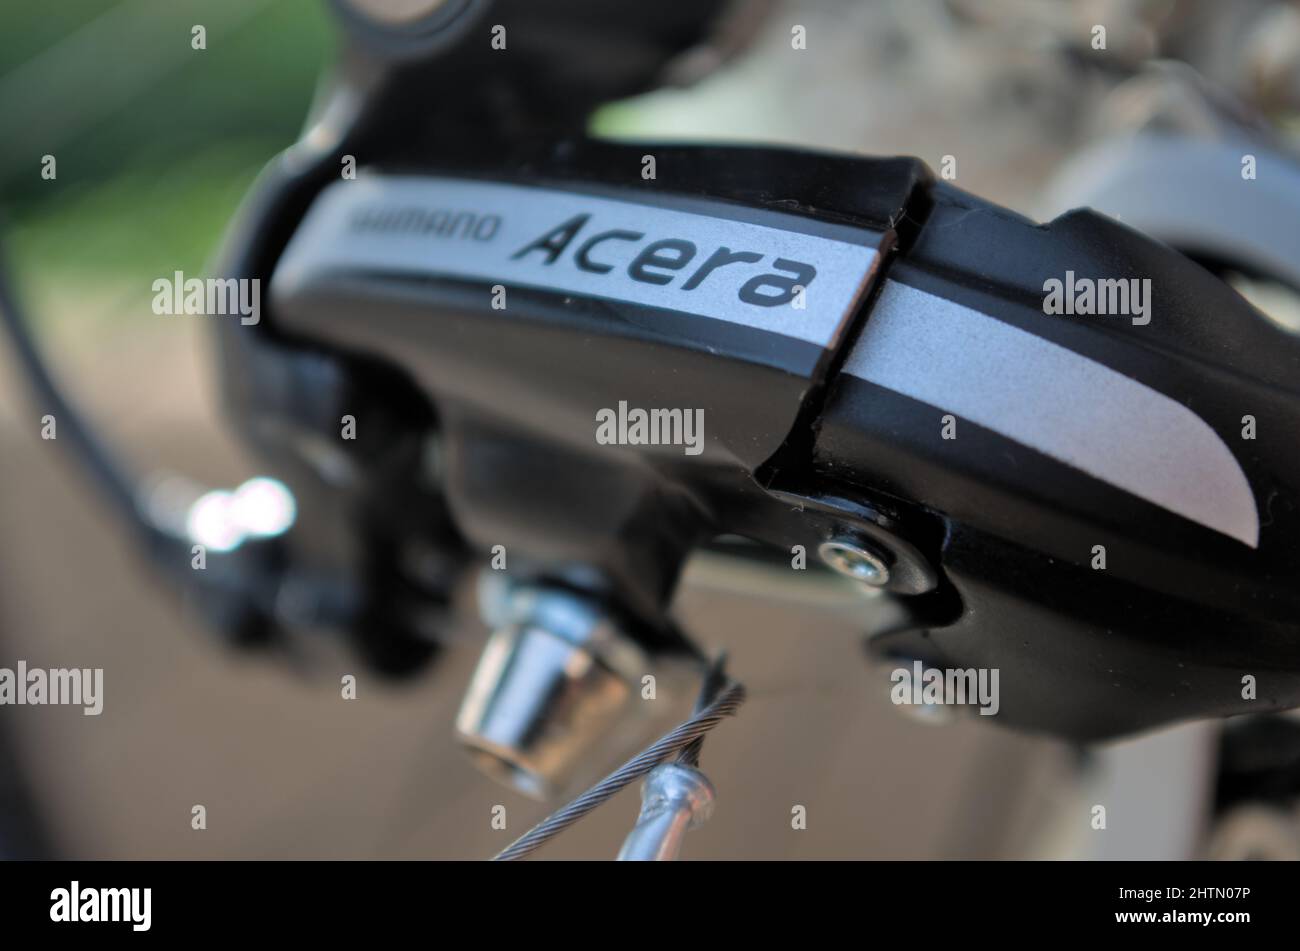 Shimano Acera bicycle rear derailleur. Bicycle components Stock Photo